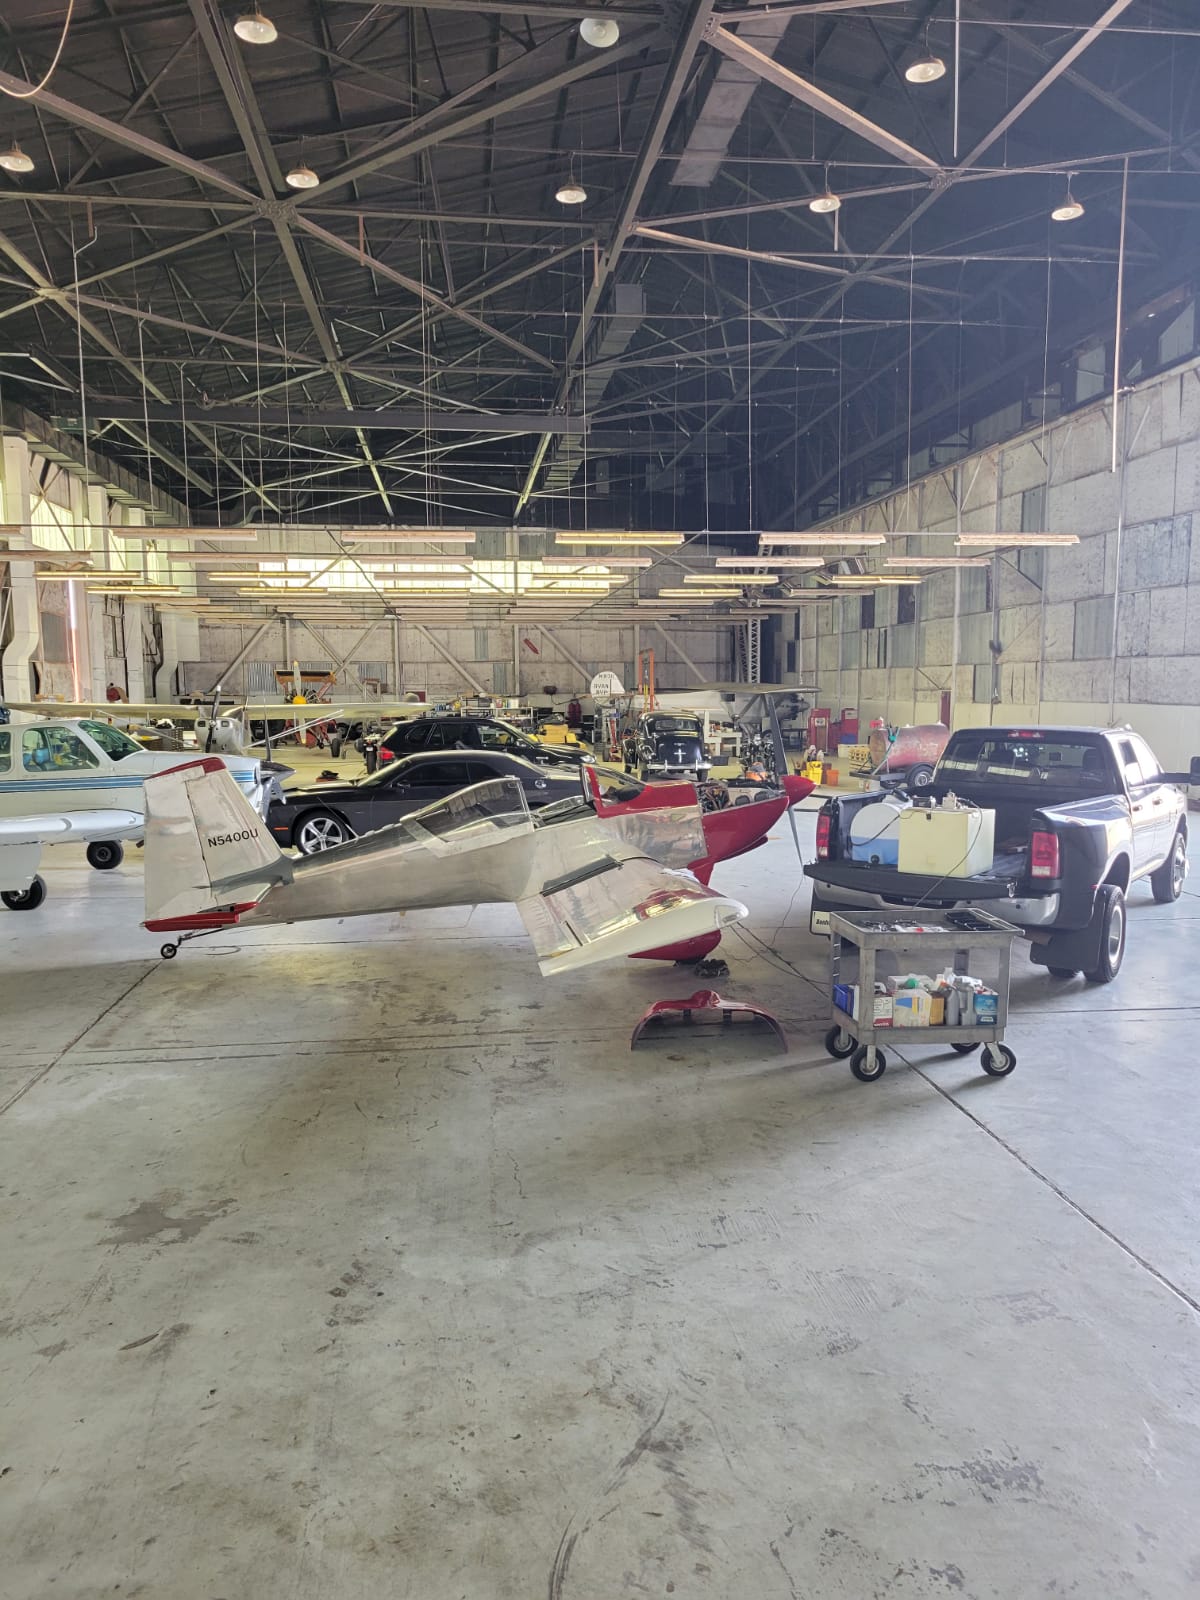 Bob's Hangar In Oklahoma.jpeg